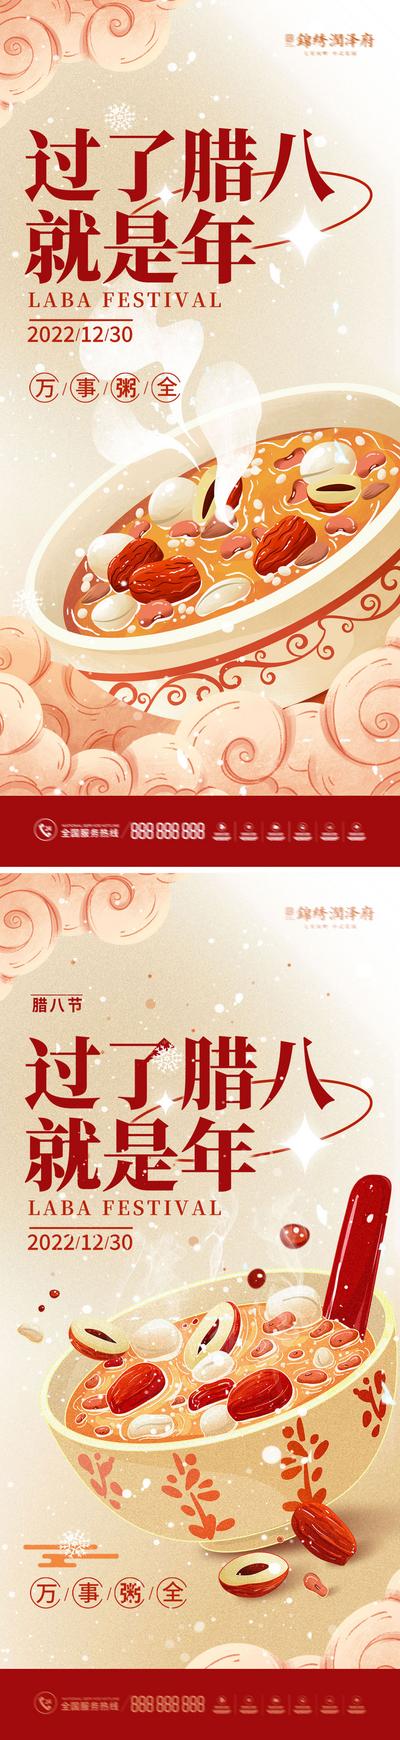 南门网 海报 地产 中国传统节日 腊八节 腊八粥 谷物 梅花 系列